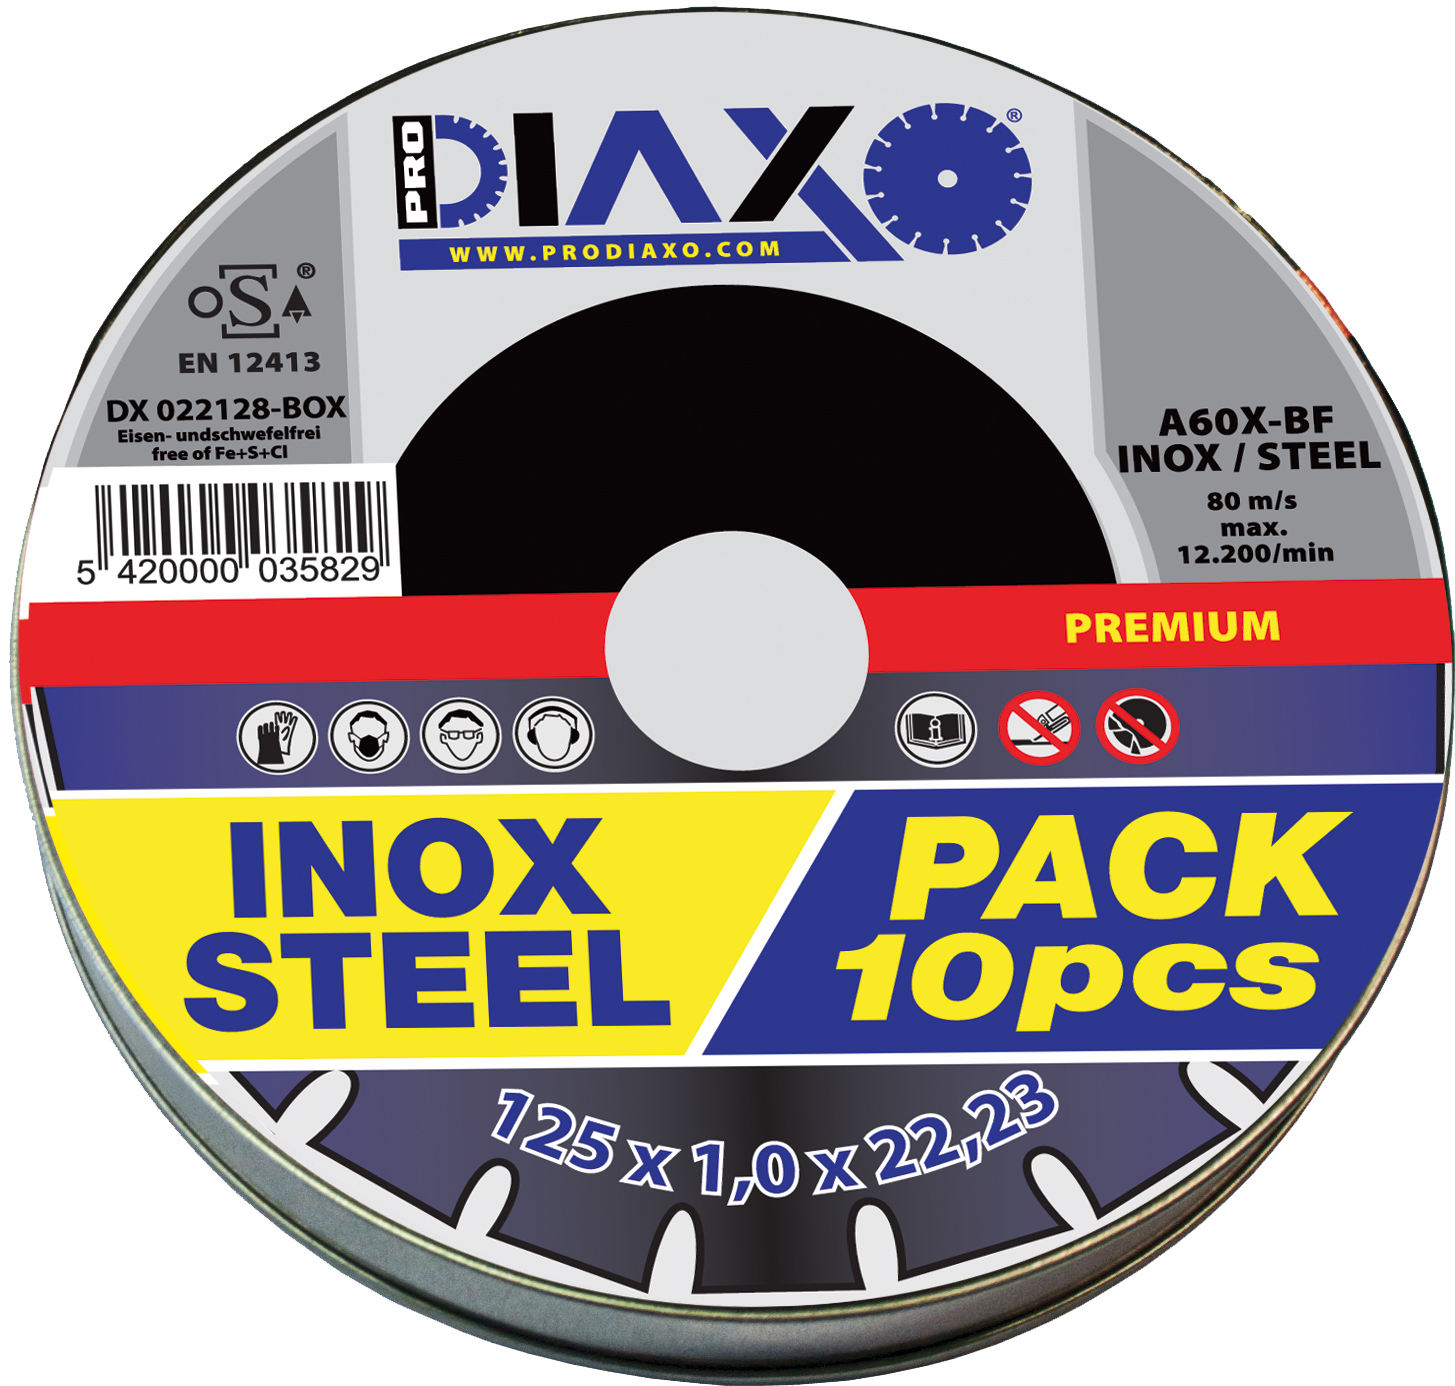 Disque abrasif INOX Ø 125 x 1,0 mm A60X-BF / Premium Construction - Box 10 pcs